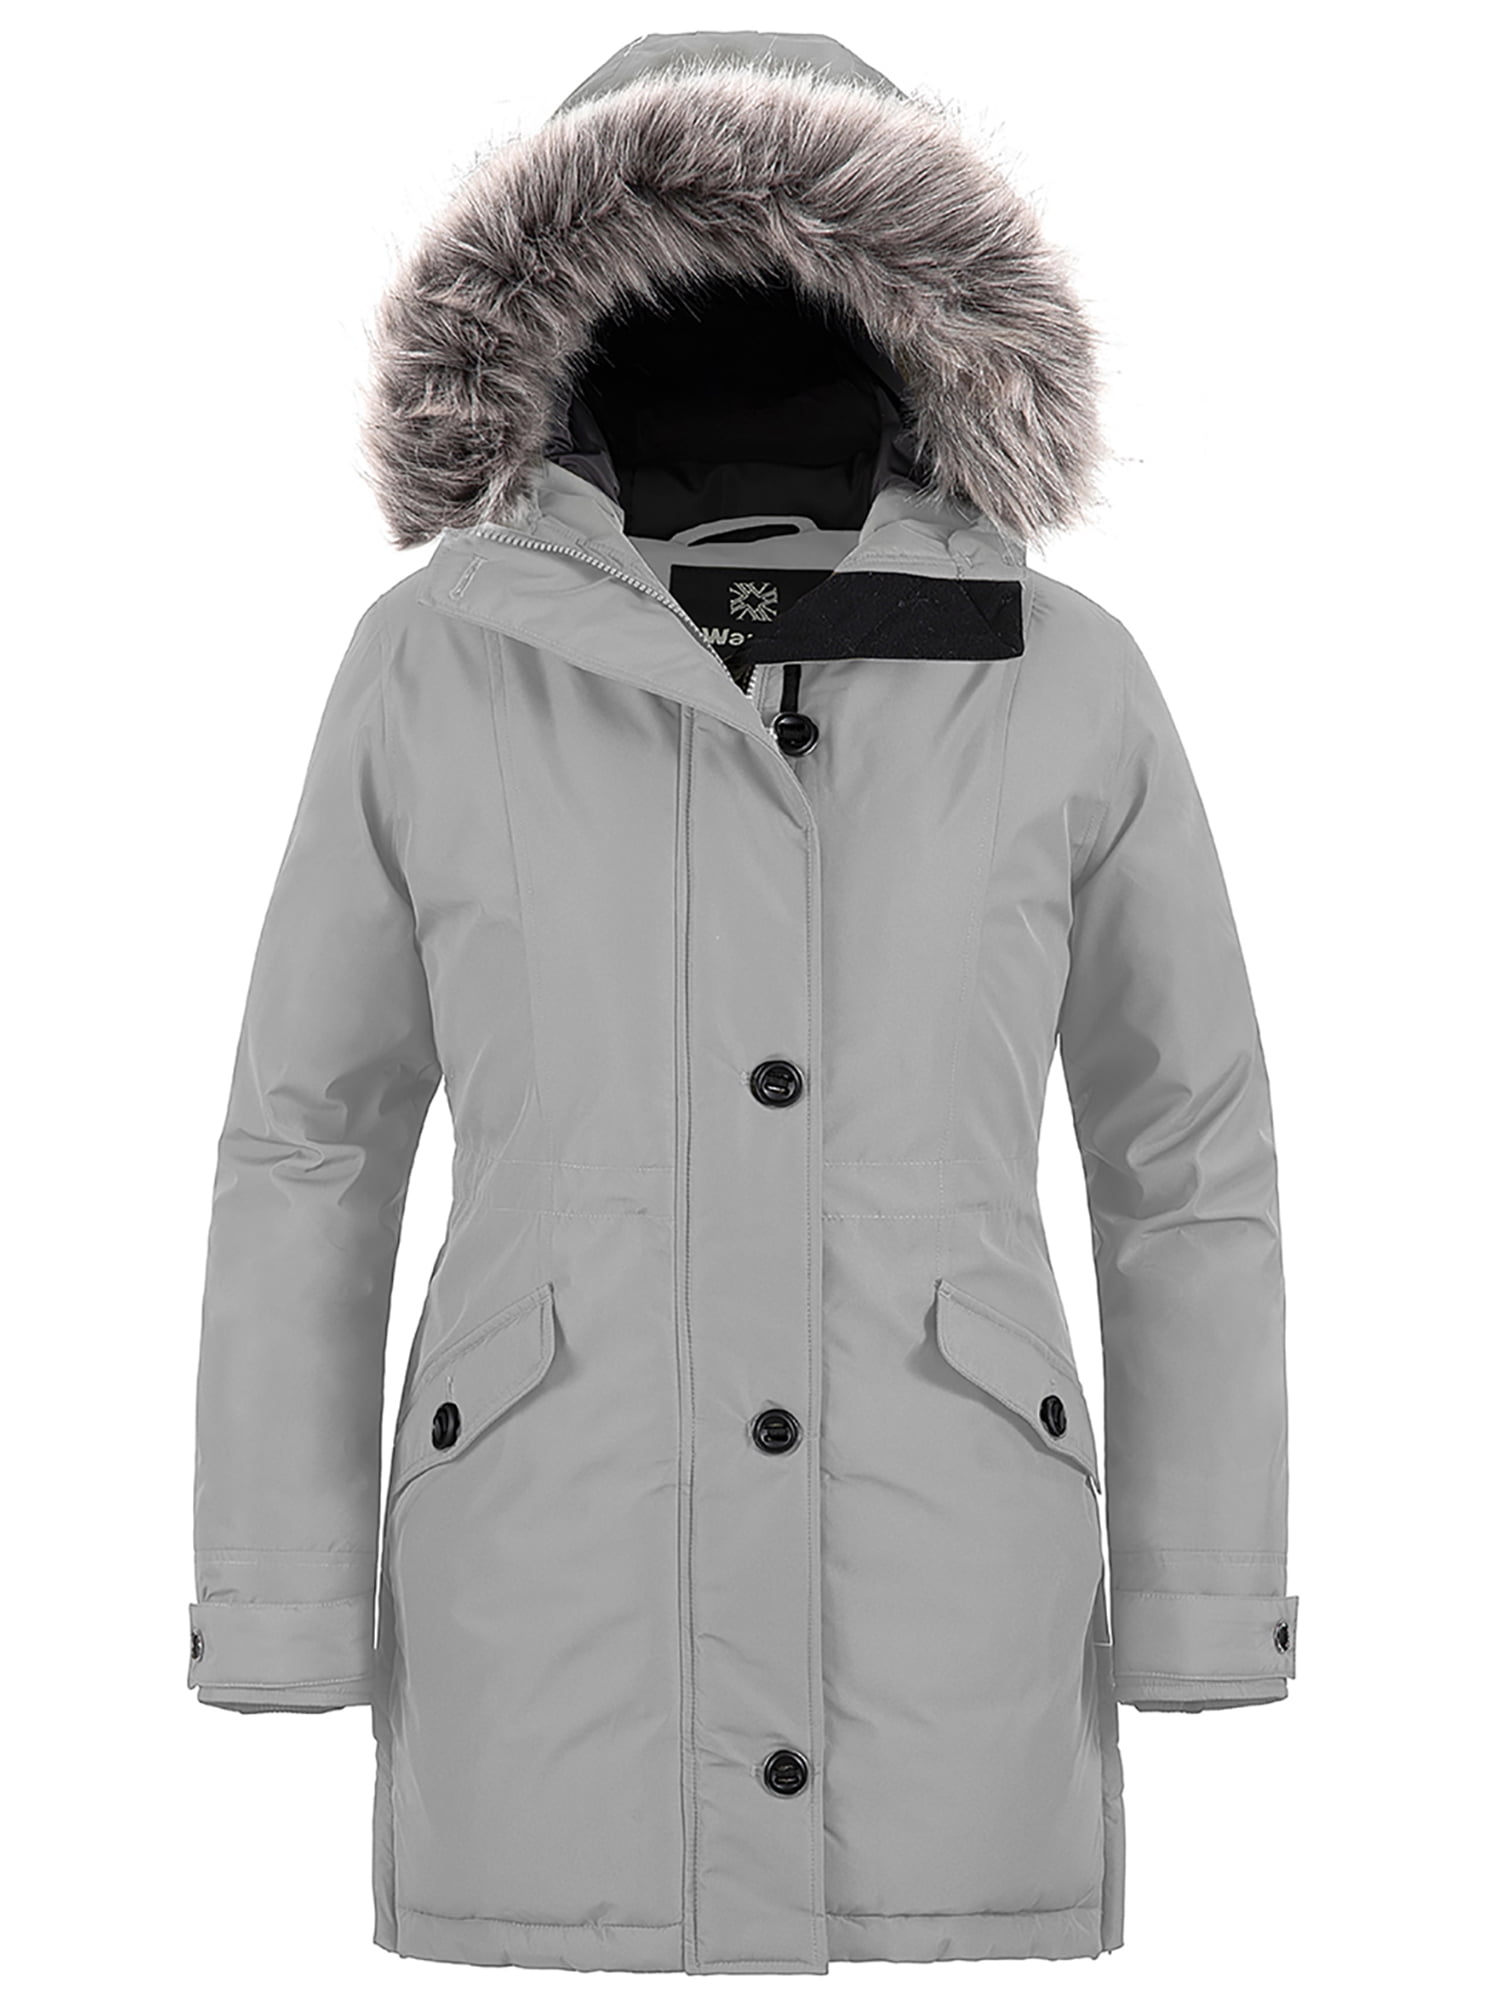 Wantdo Women's Winter Jacket Warm Puffer Coat Hooded Winter Parka ...